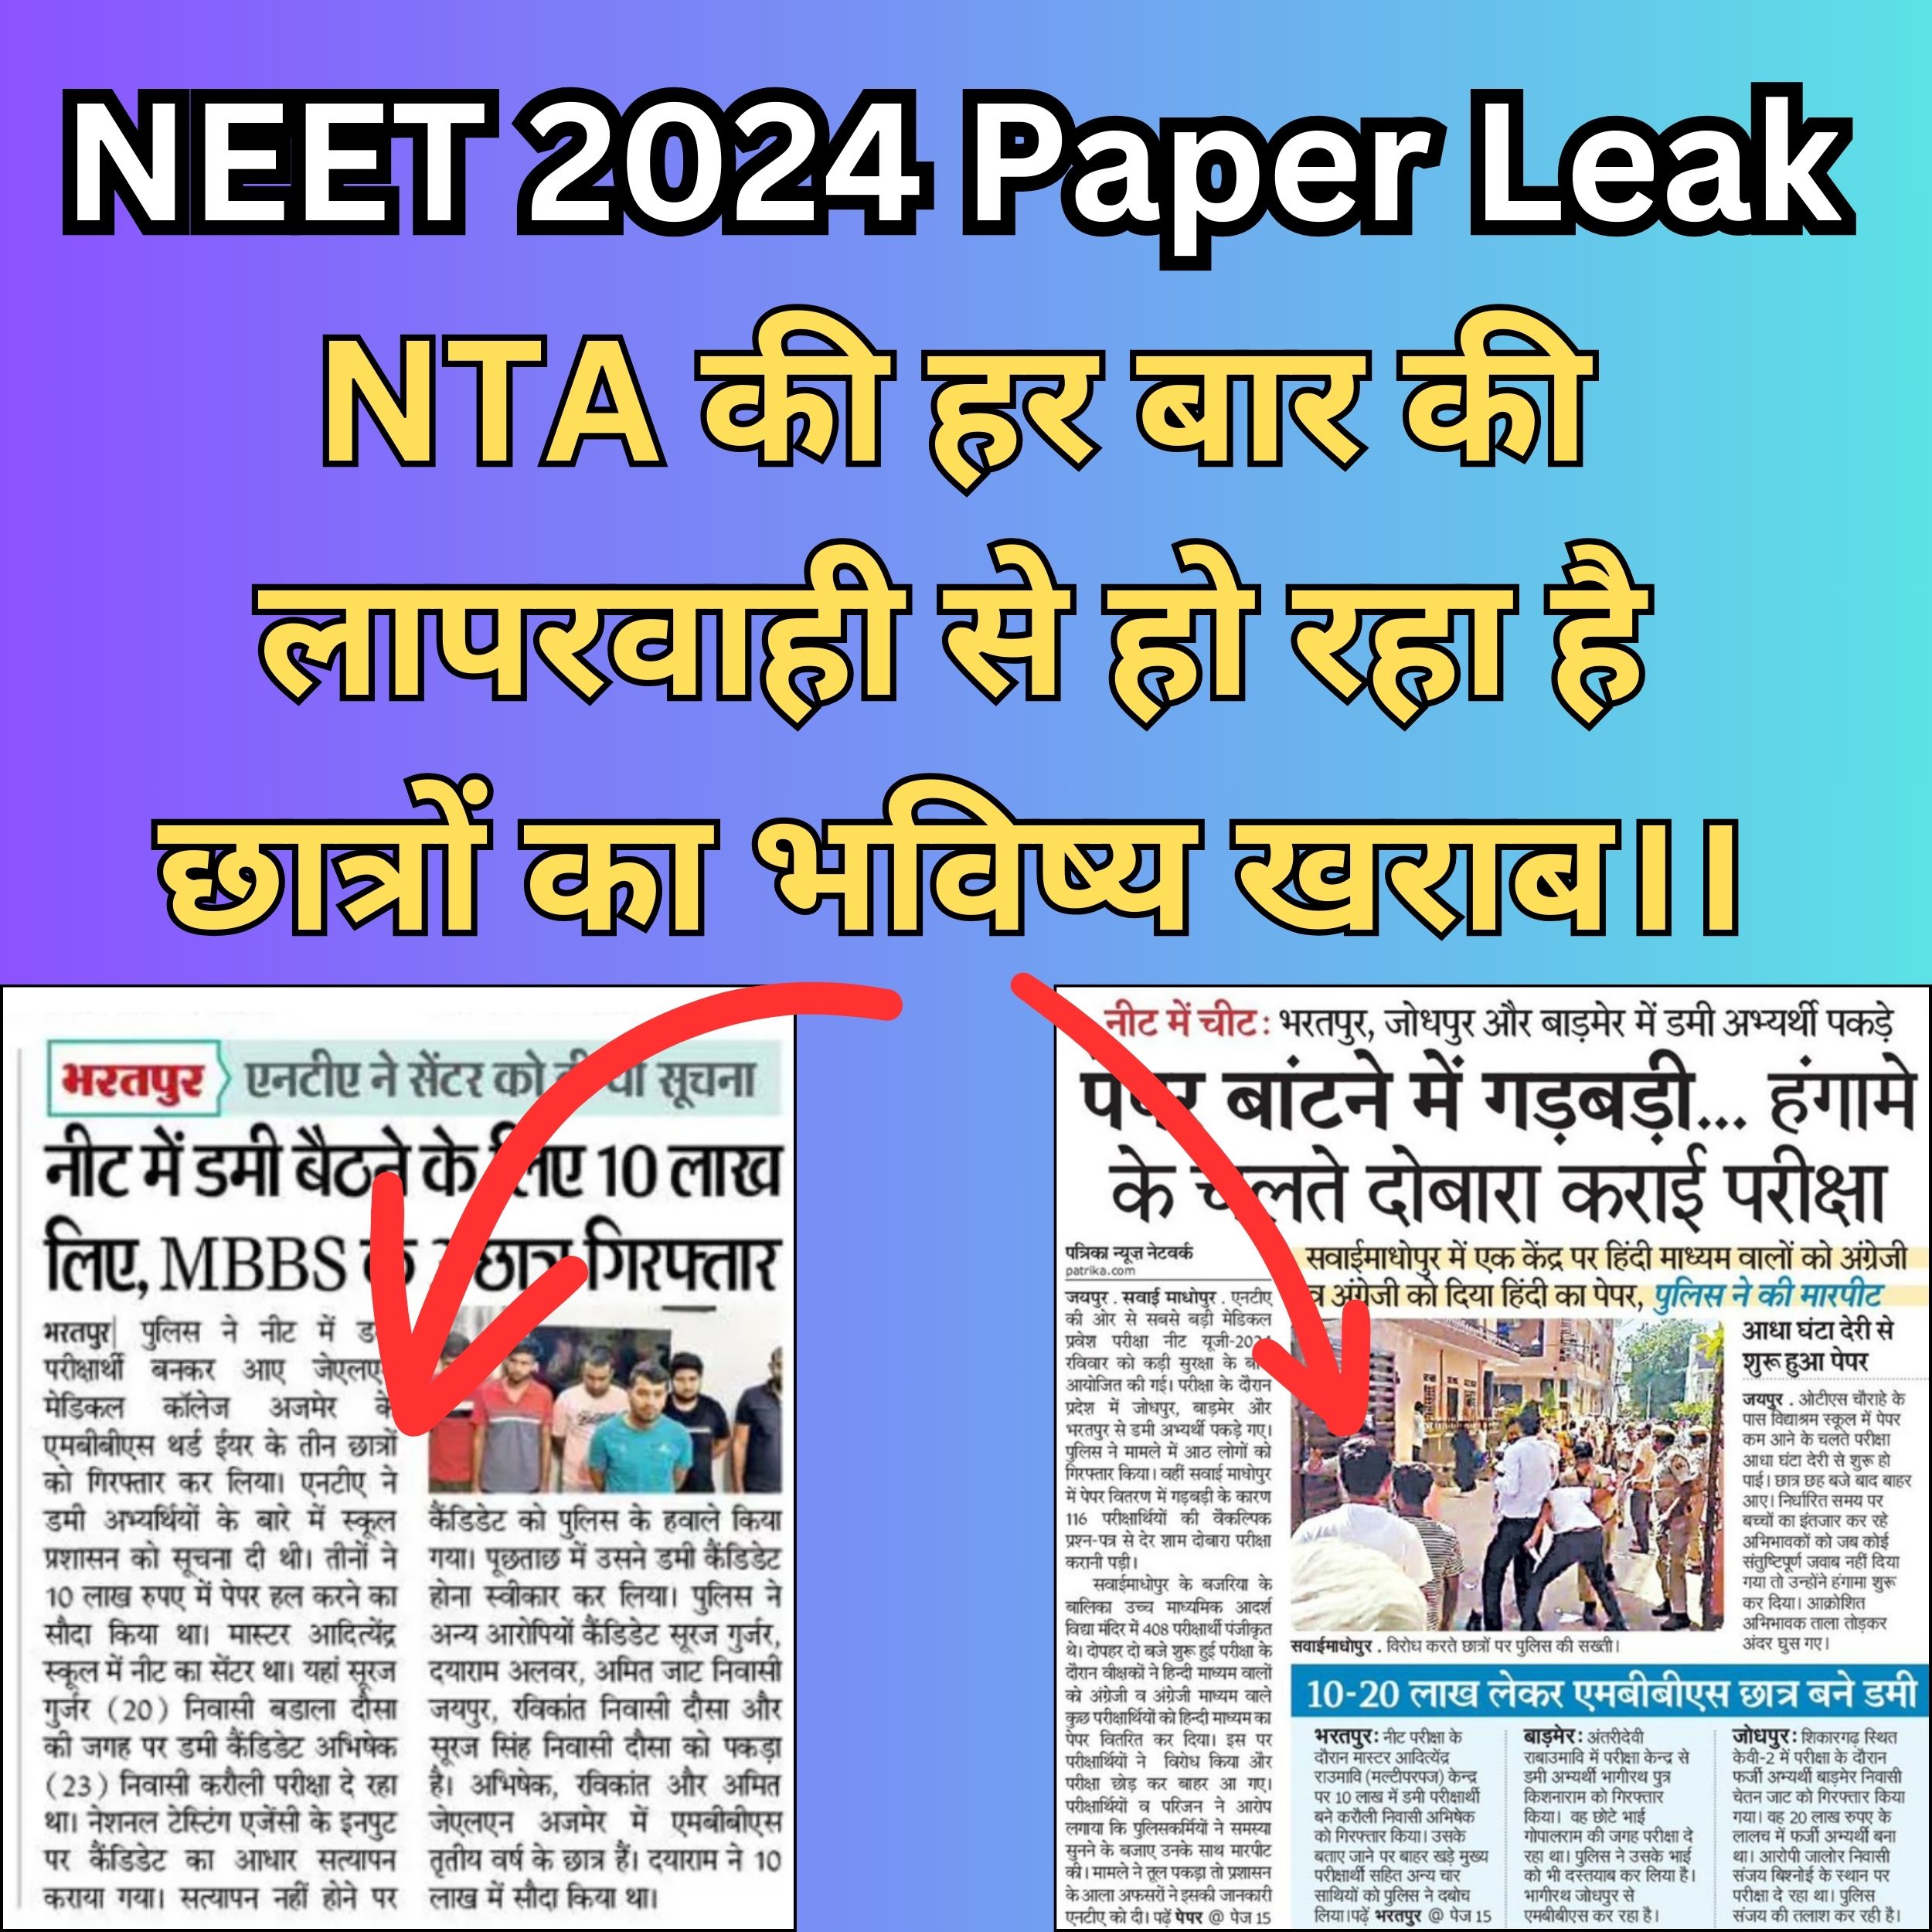 Neet 2024 Paper Leak